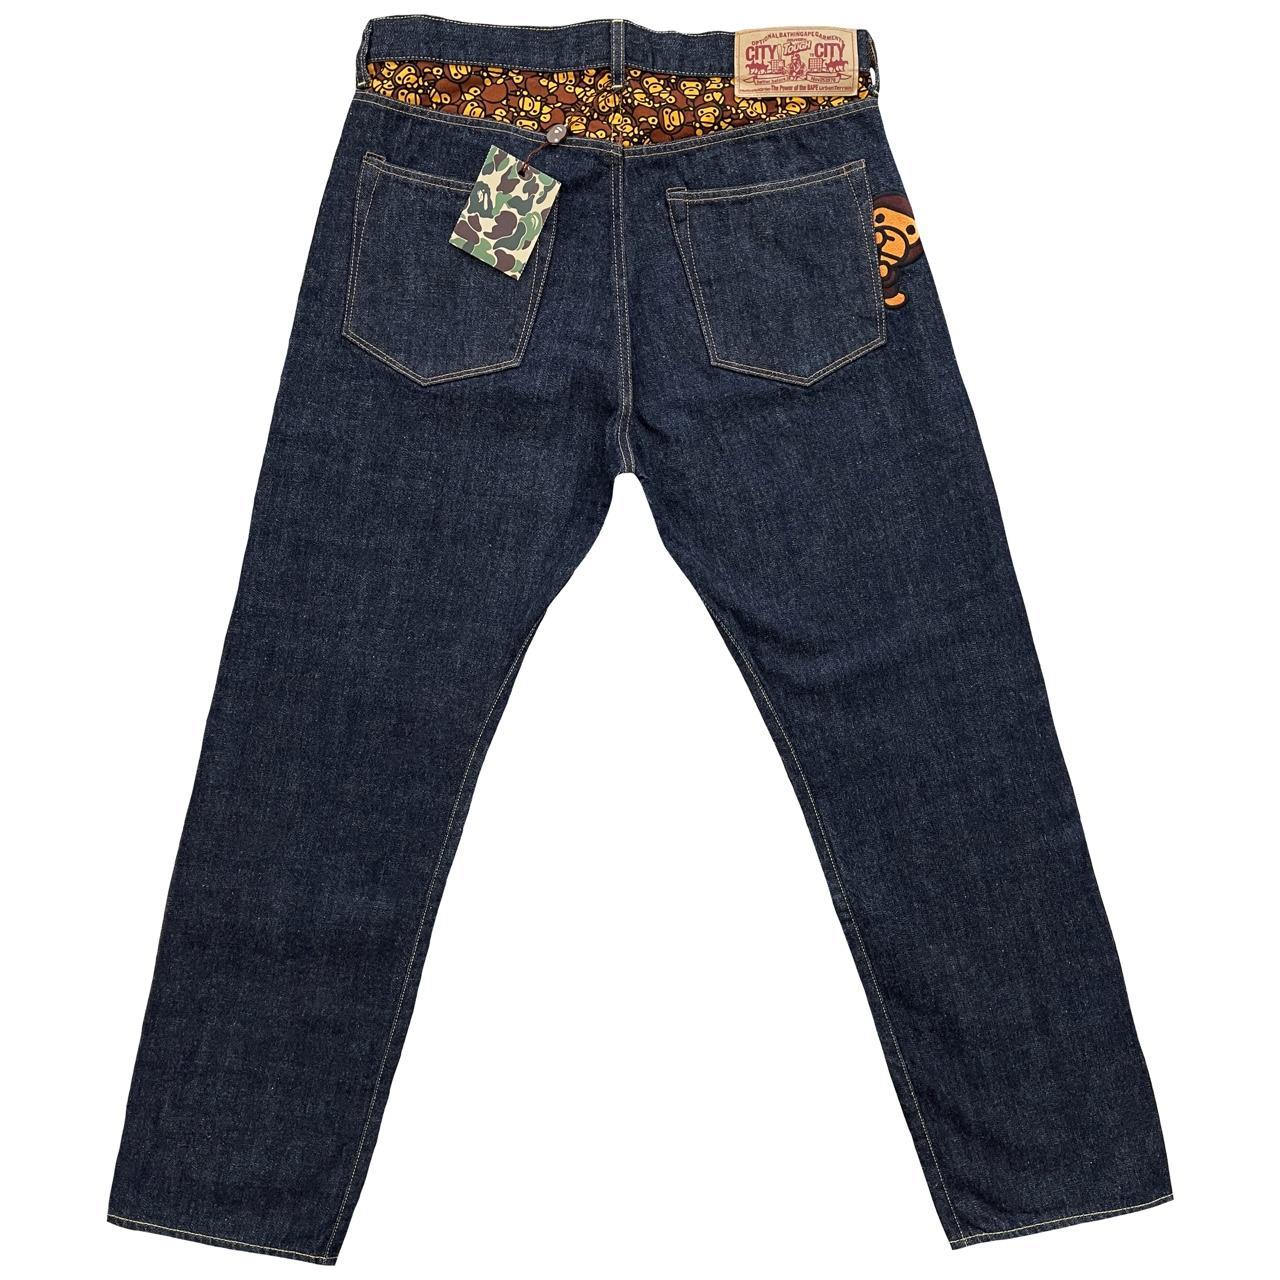 Vintage Bape Jeans Baby Milo Nigo